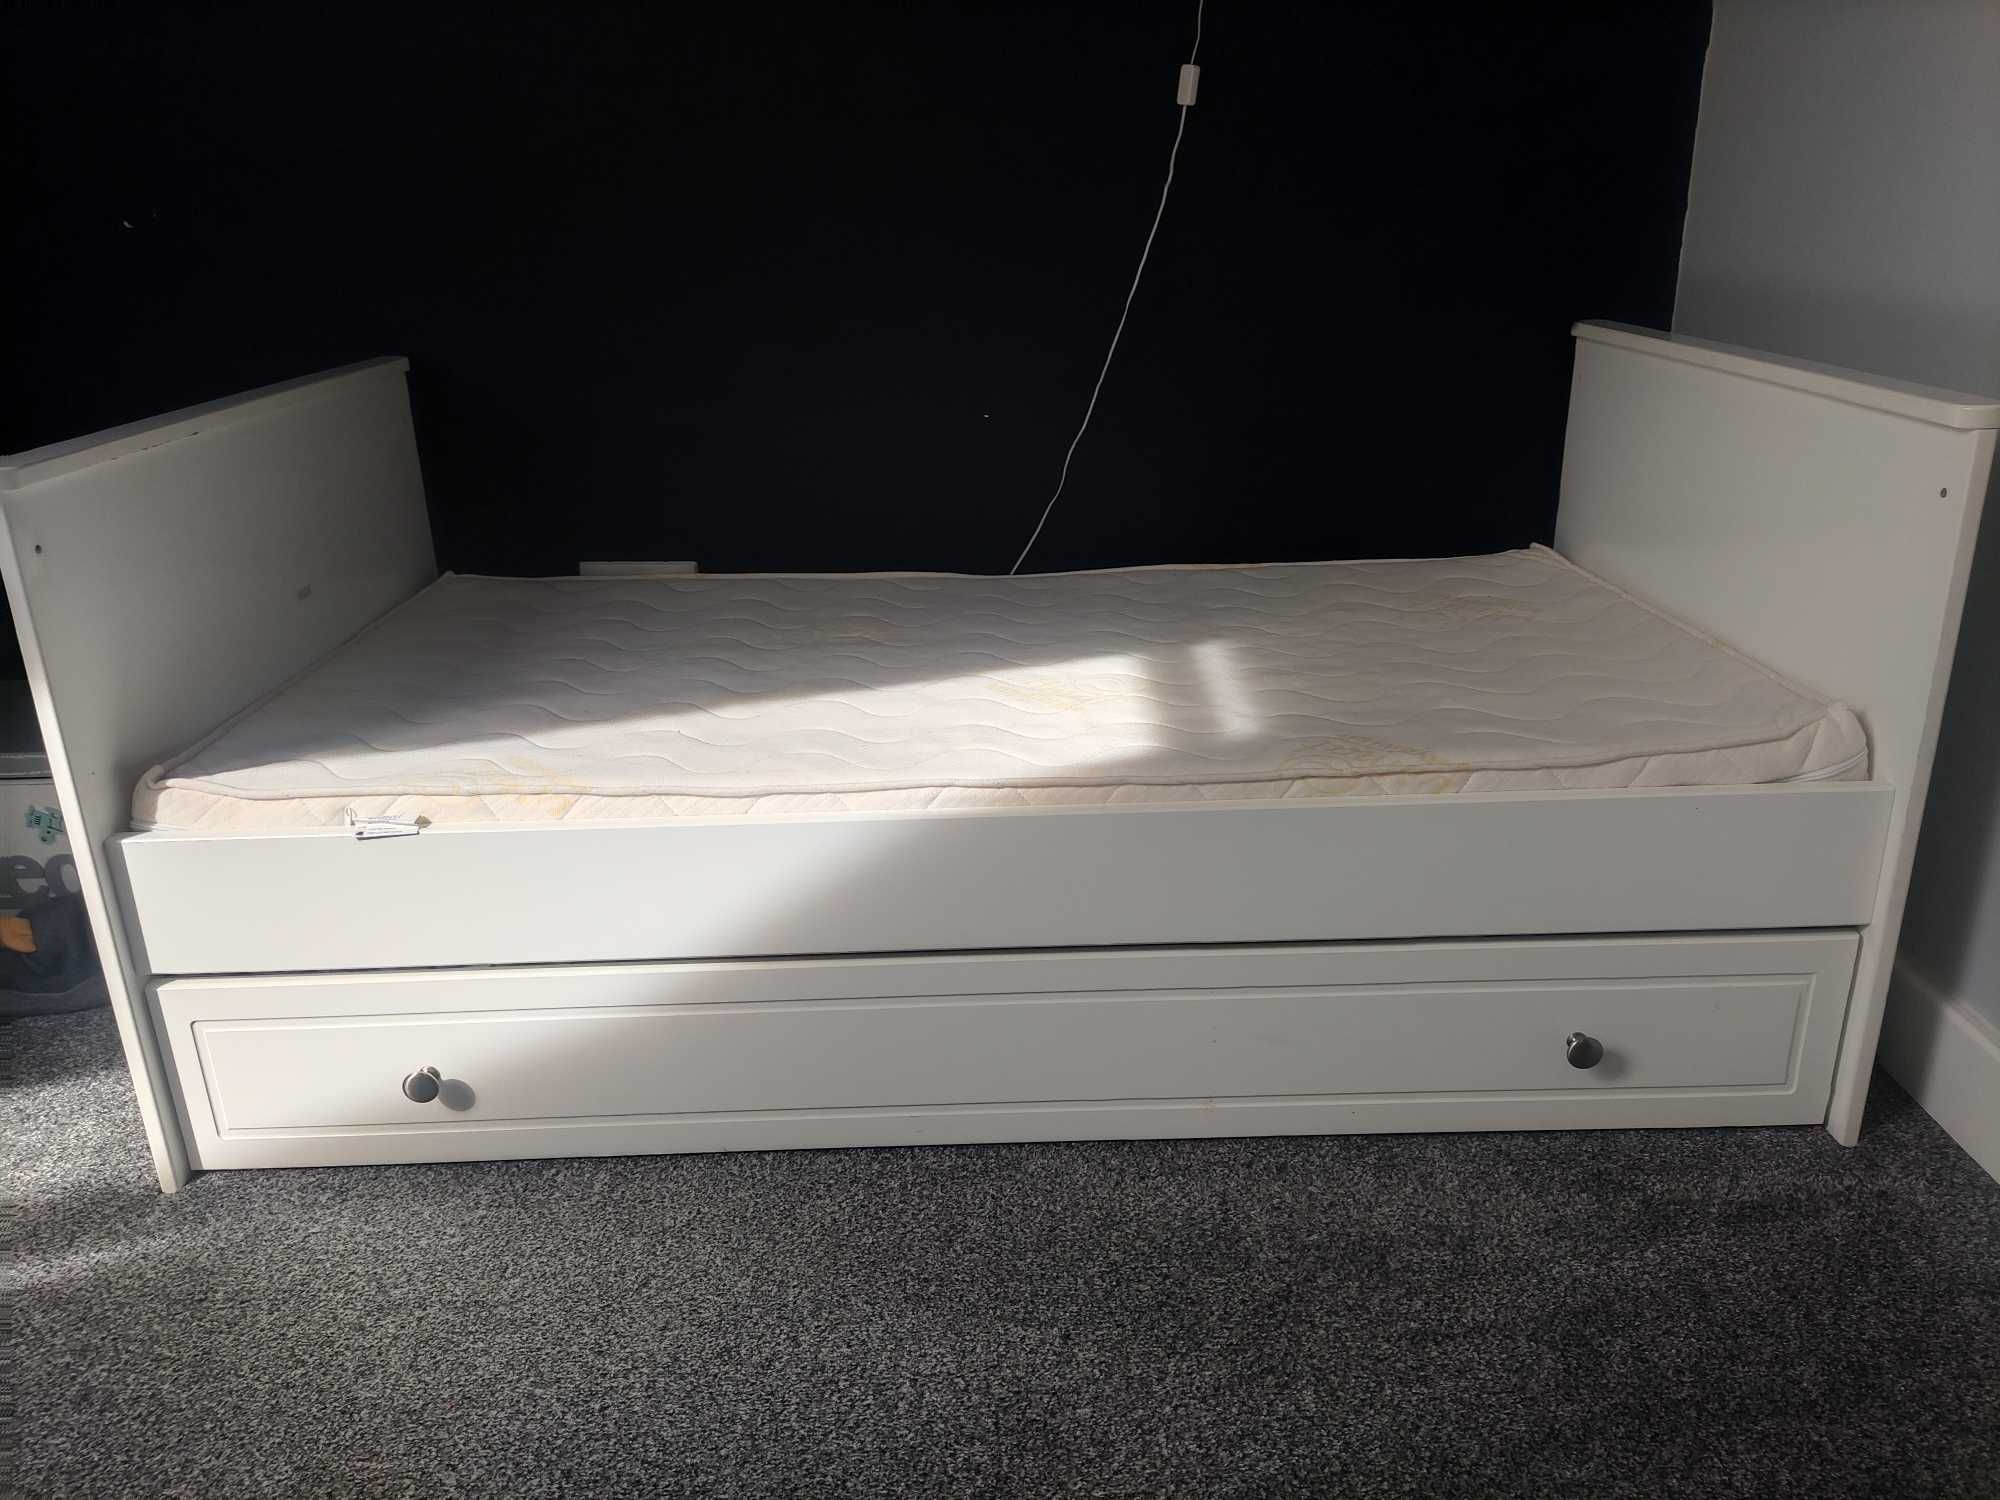 Łóżeczko/łóżko tapczanik rozmiar 70x140 firmy bellamy